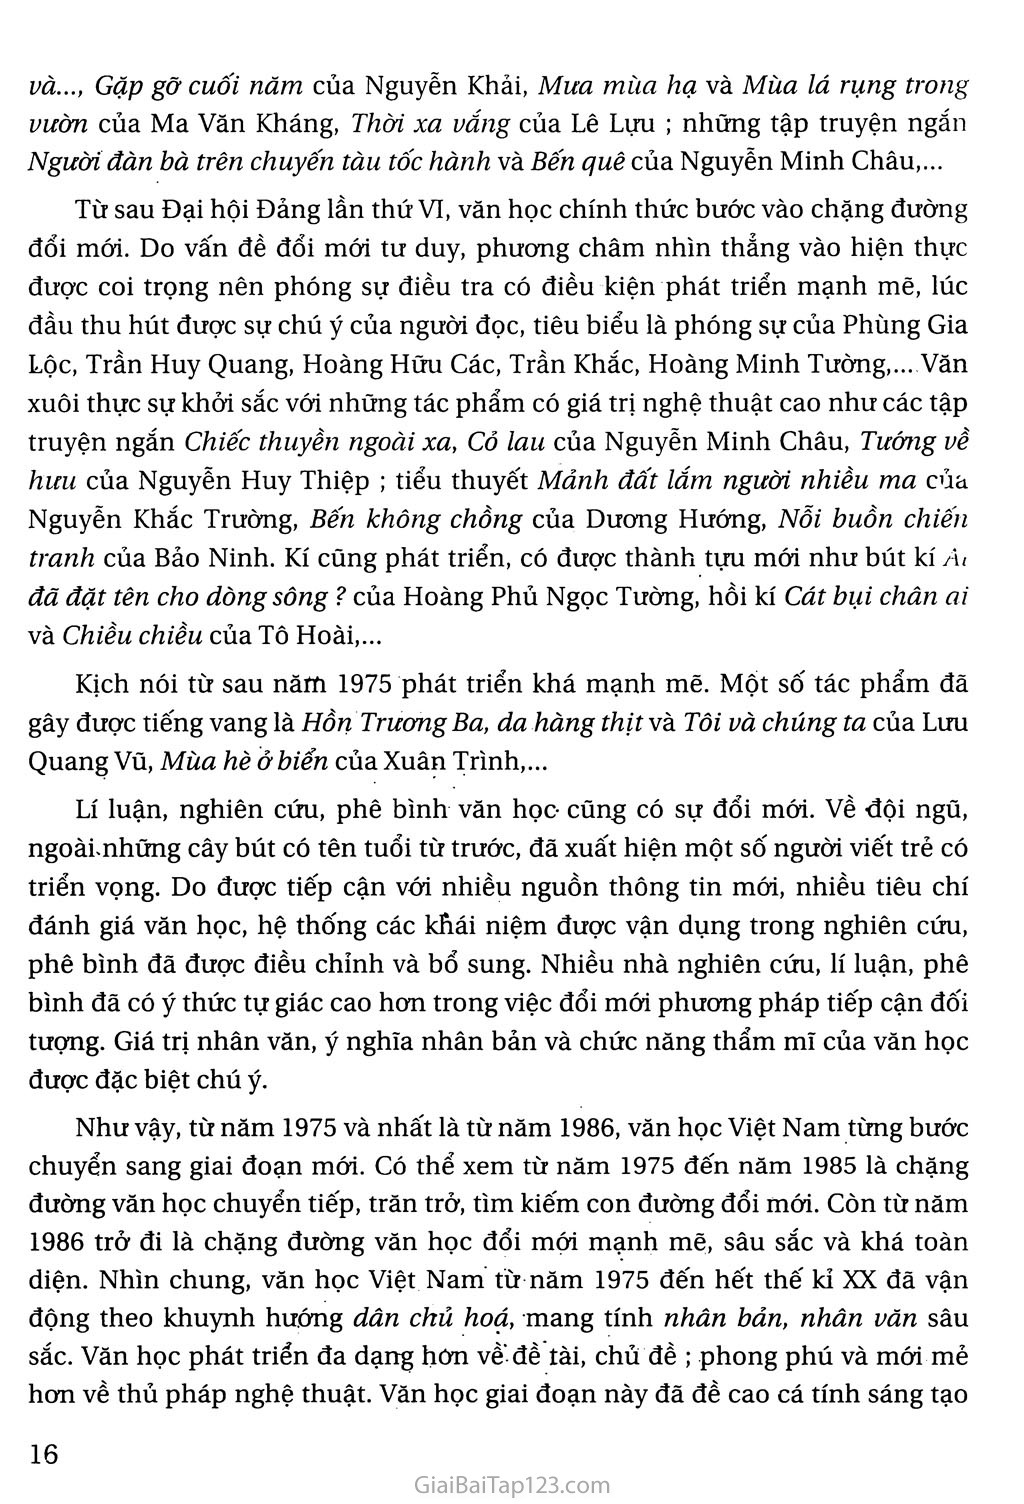 Khái quát văn học Việt Nam từ cách mạng tháng tám năm 1945 đến hết thế kỉ XX trang 14